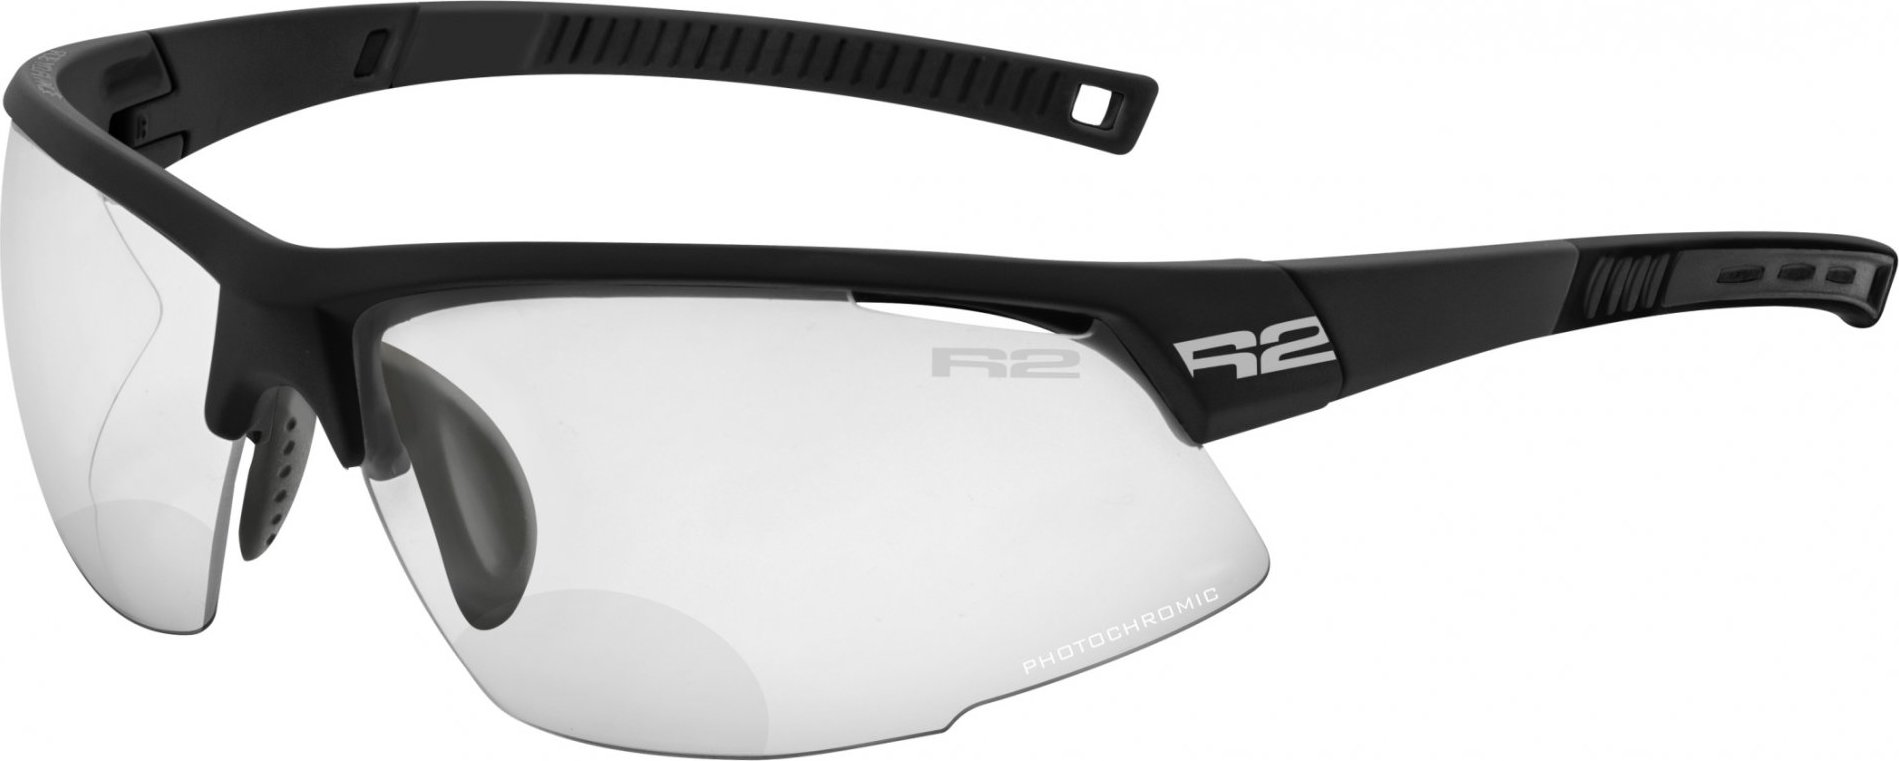 Sportovní dioptrické brýle R2 Racer černá +2